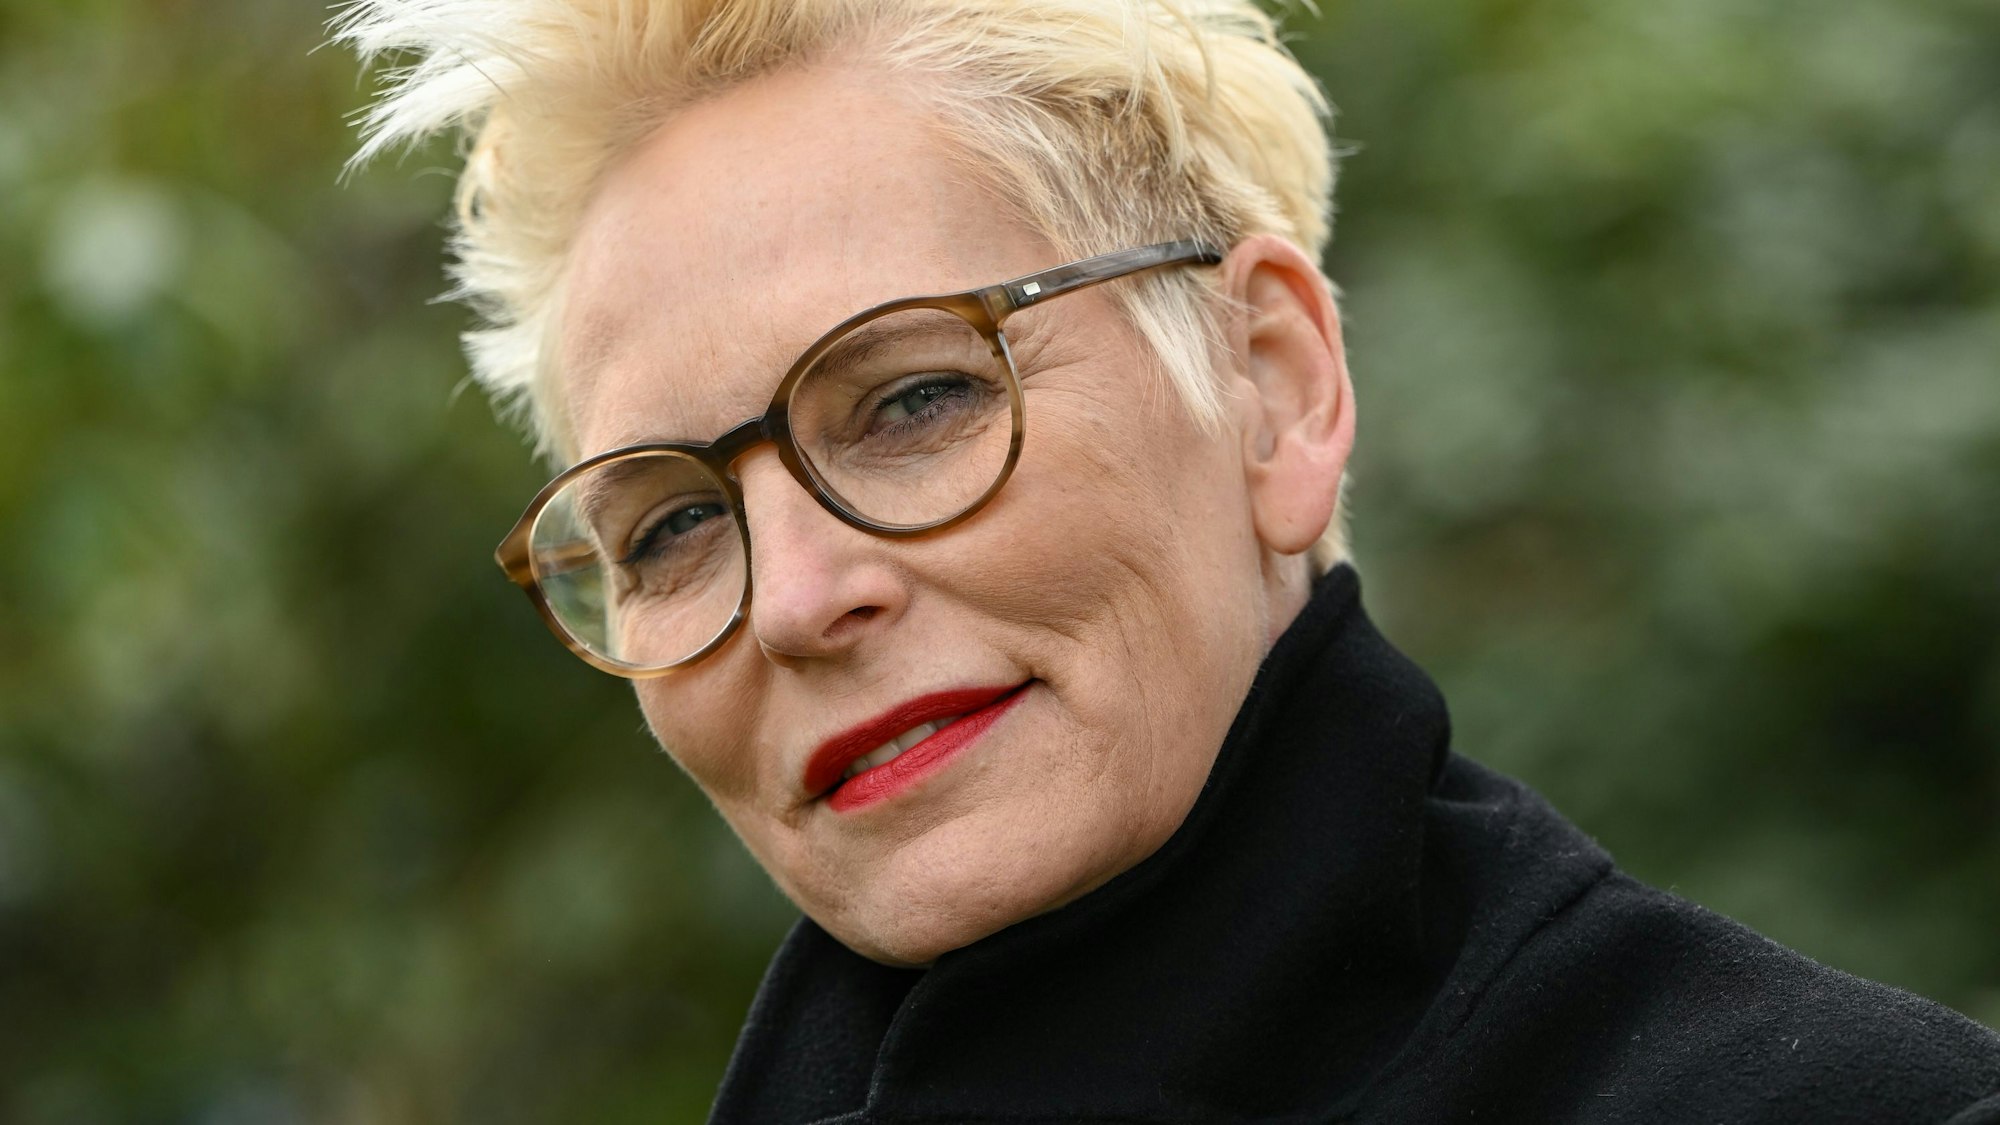 Bärbel Schäfer, Moderatorin, Journalistin und Autorin